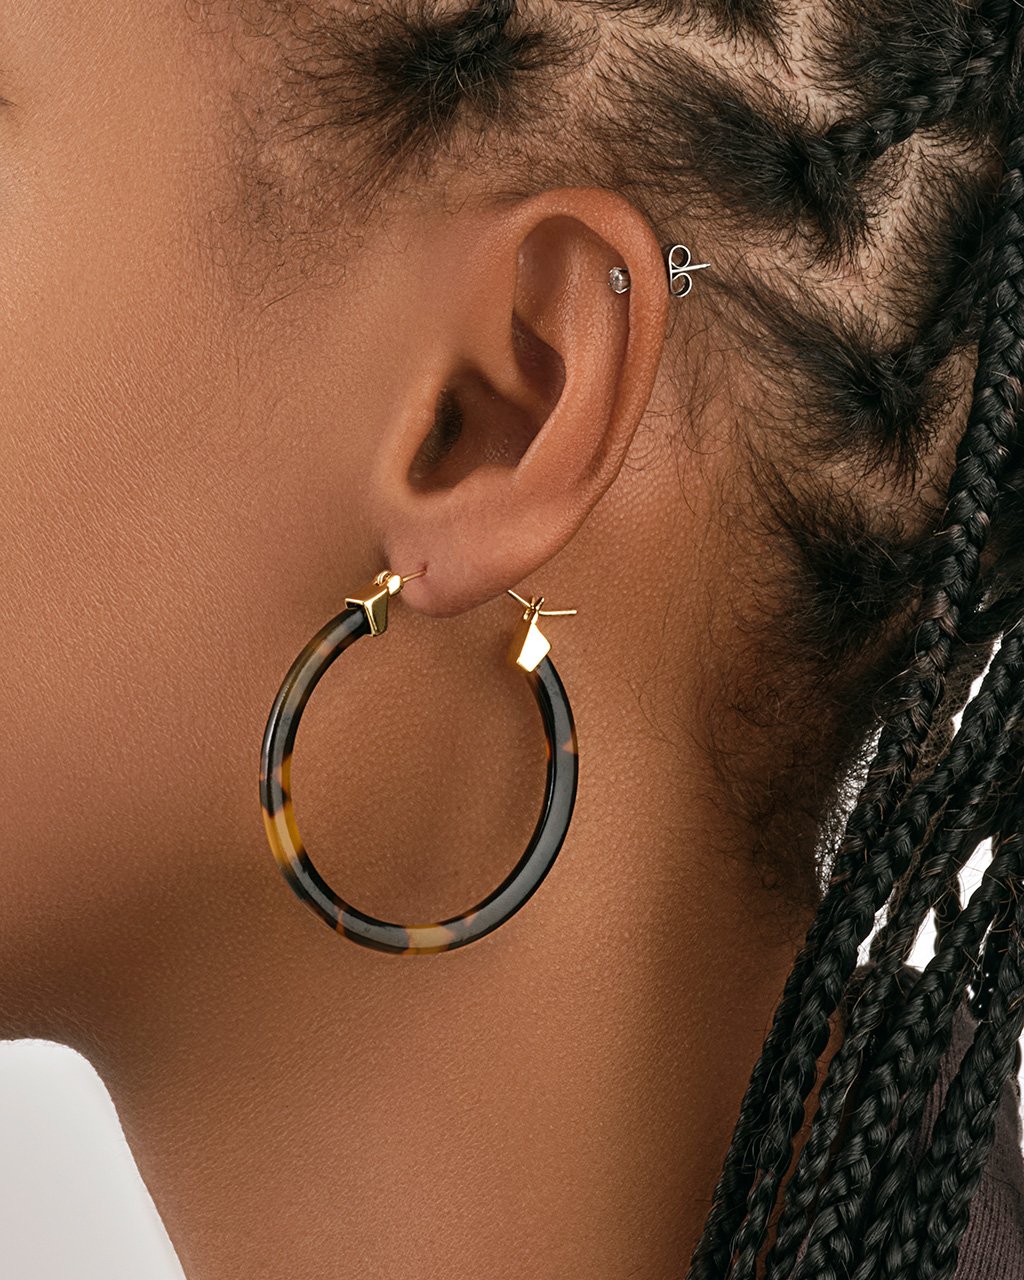 50mm Resin Hoop Earrings Earring Sterling Forever 